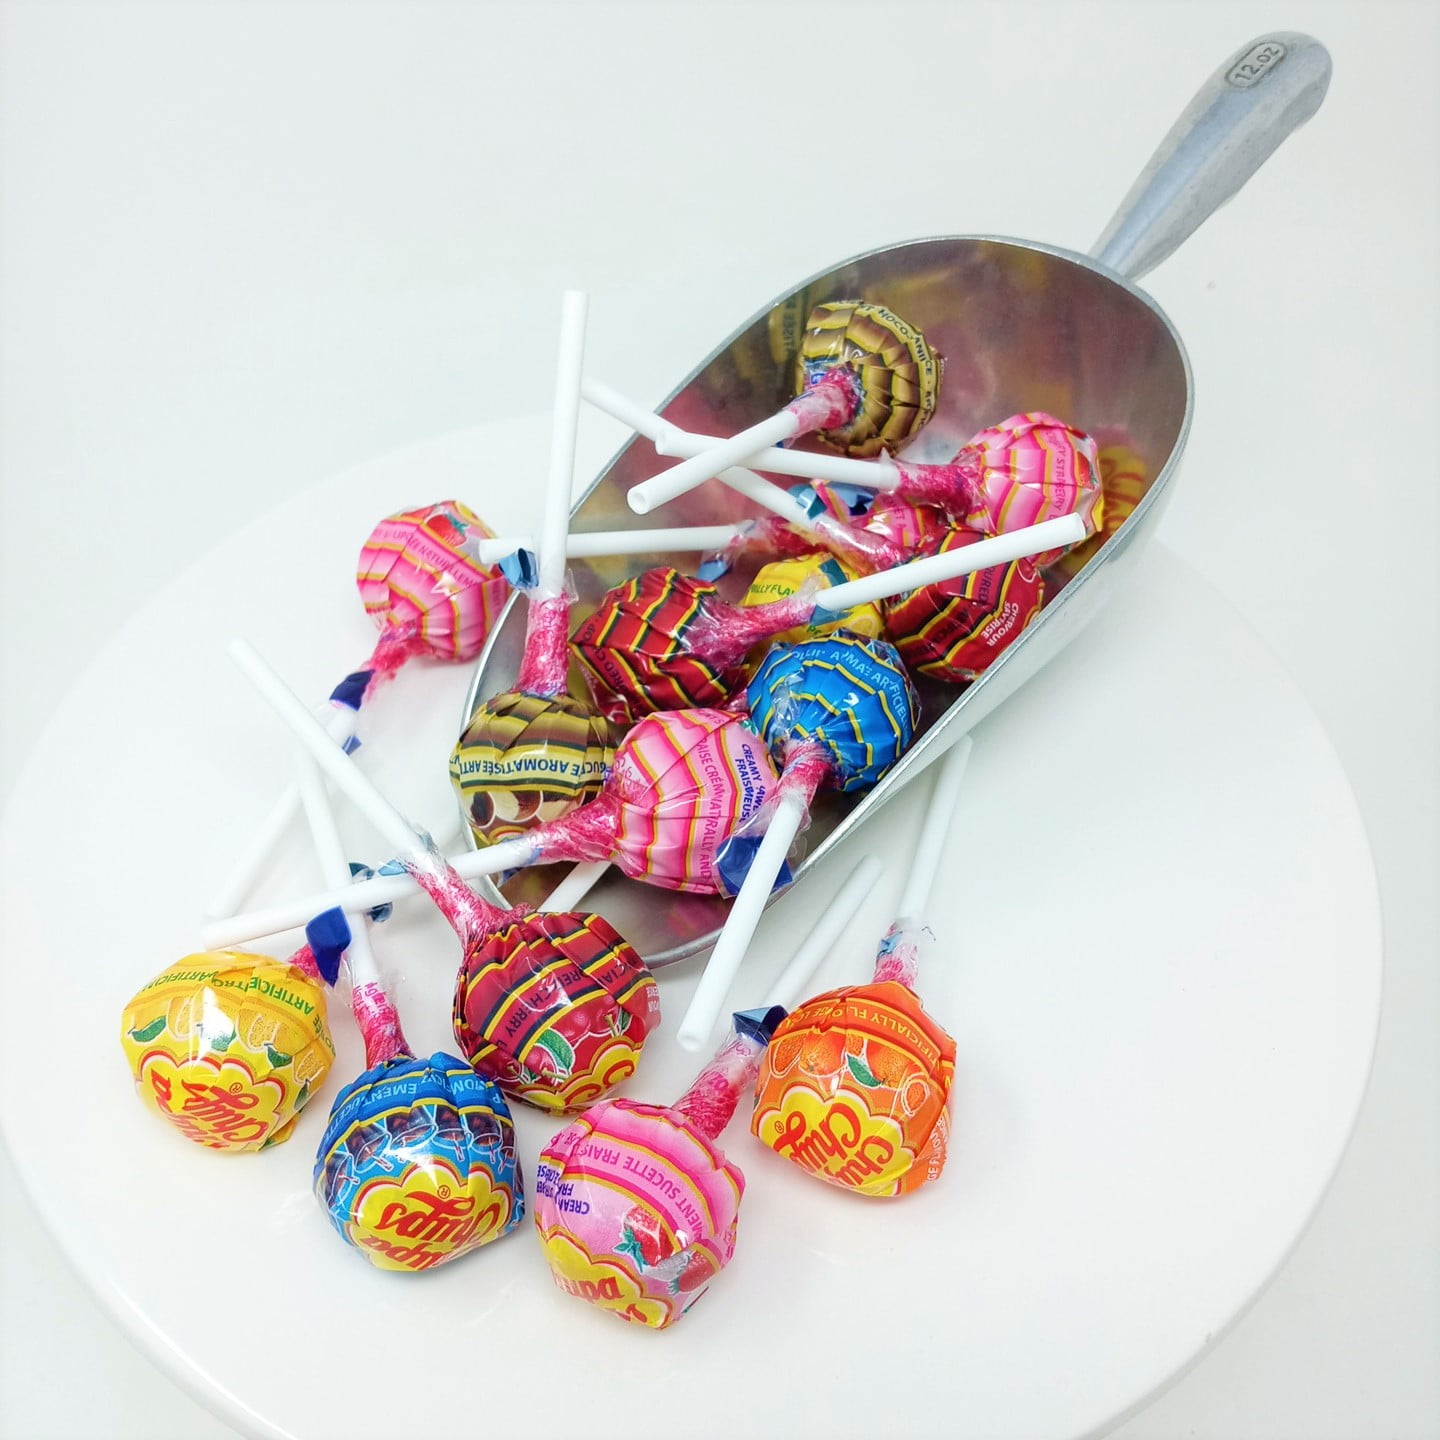 Bulk Candy - Chupa Chups Lollipops - Grandpa Joe's Candy Shop